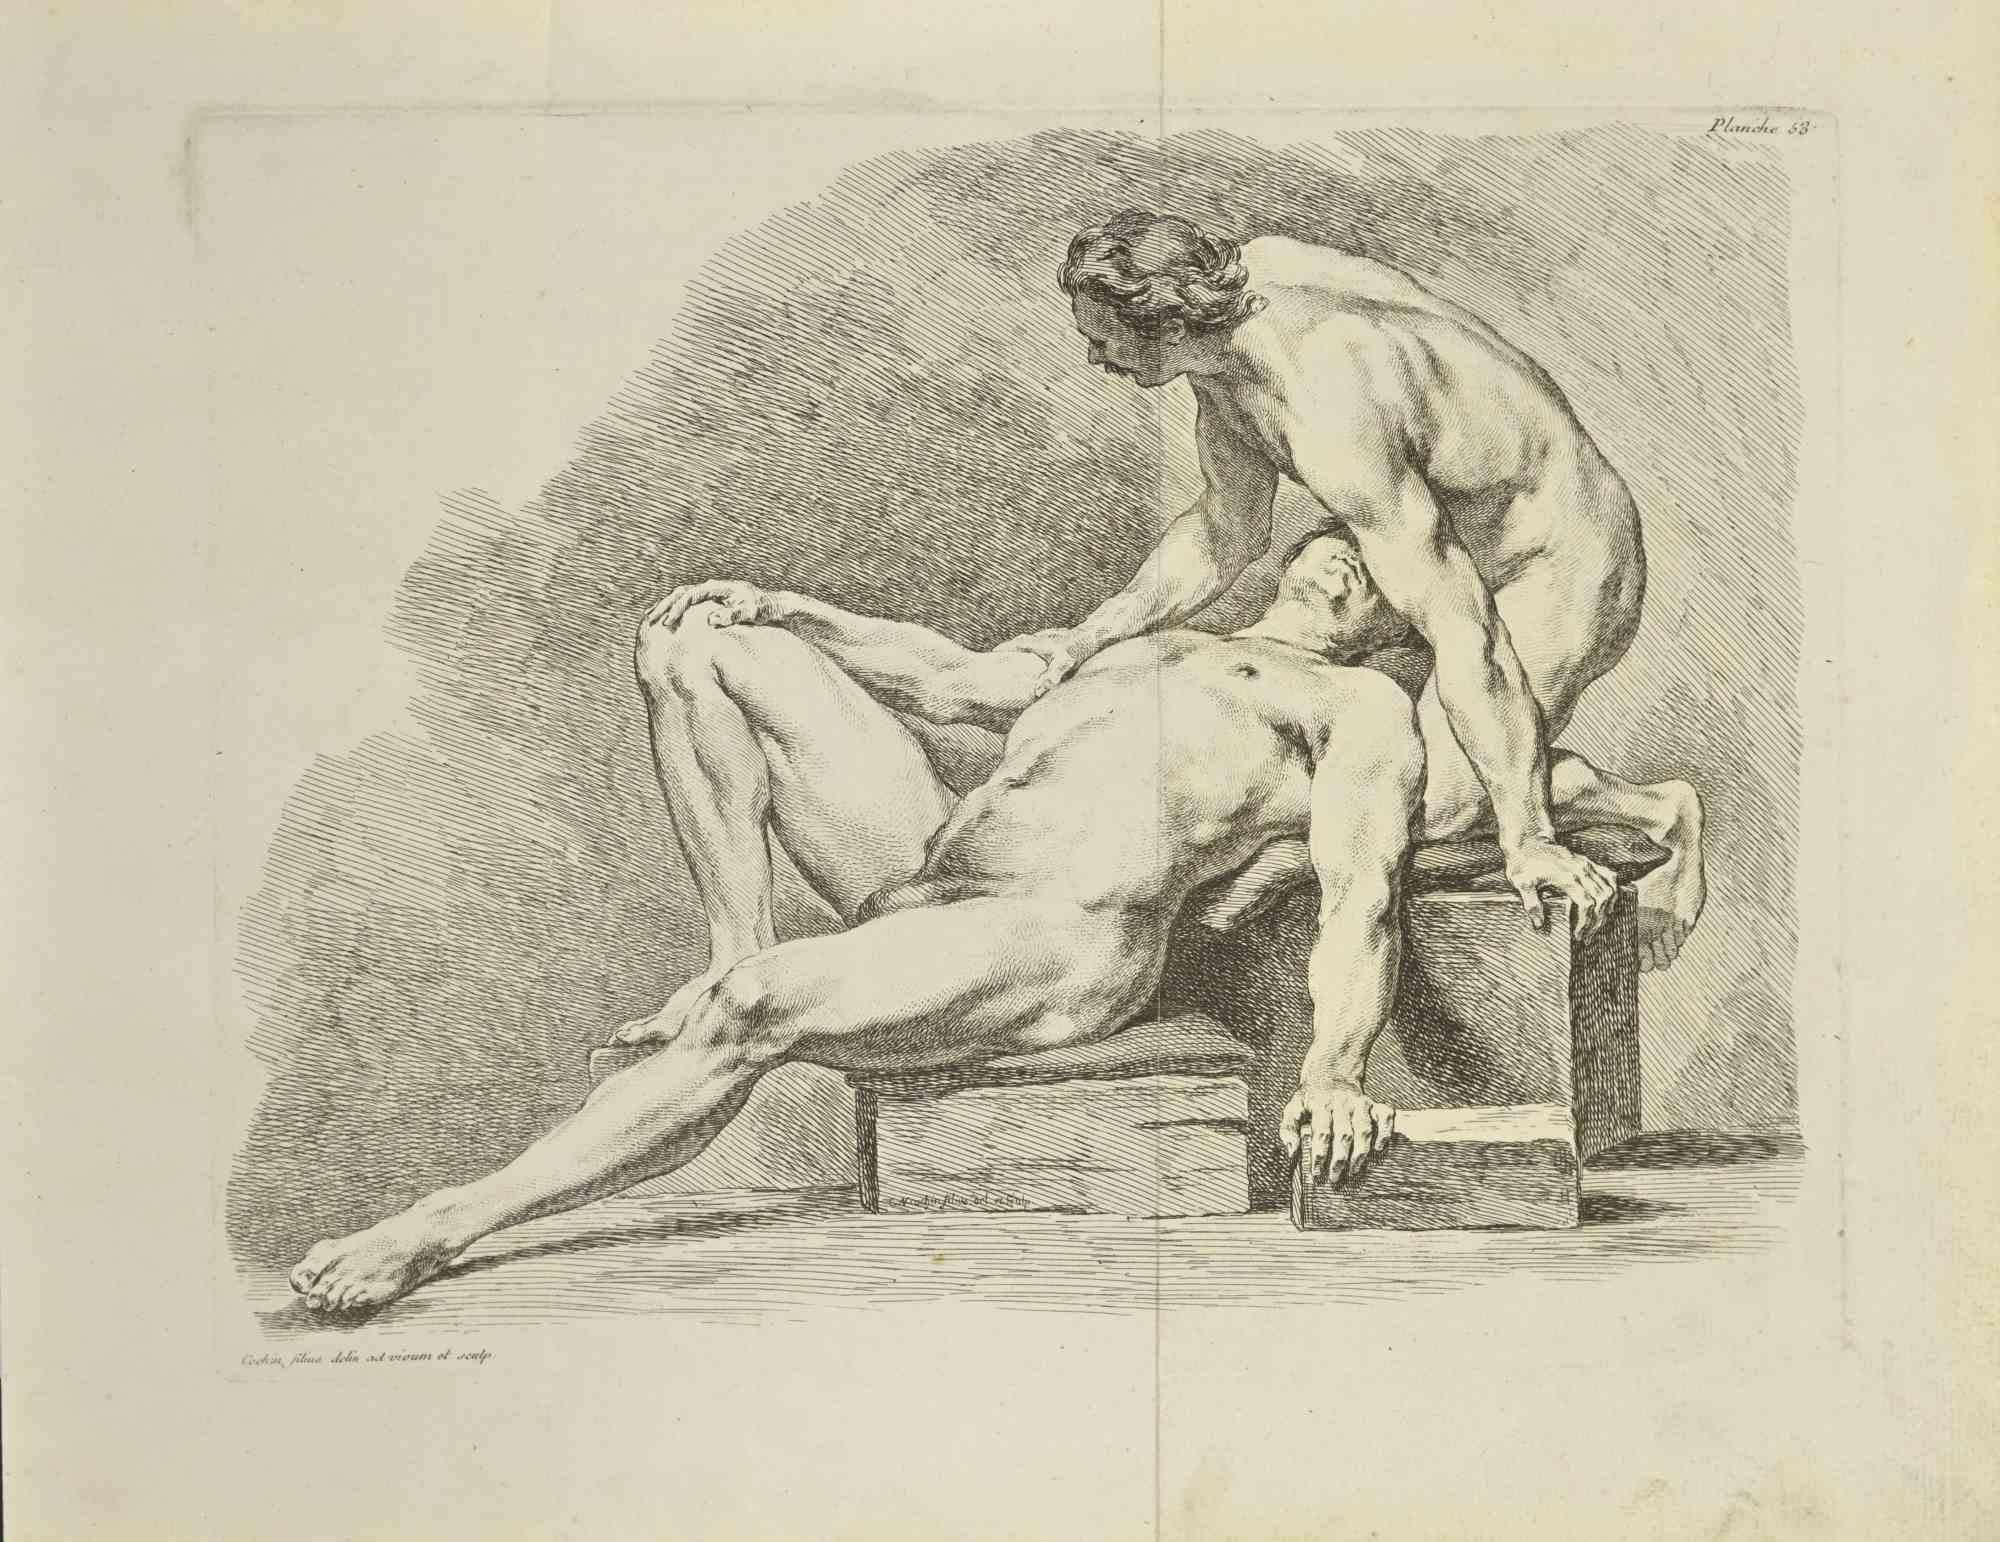 Deux hommes nus est une eau-forte réalisée par Nicholas Cochin en 1755.

Signé sur la plaque.

Bon état avec pliage central.

L'œuvre d'art est représentée par des traits assurés.